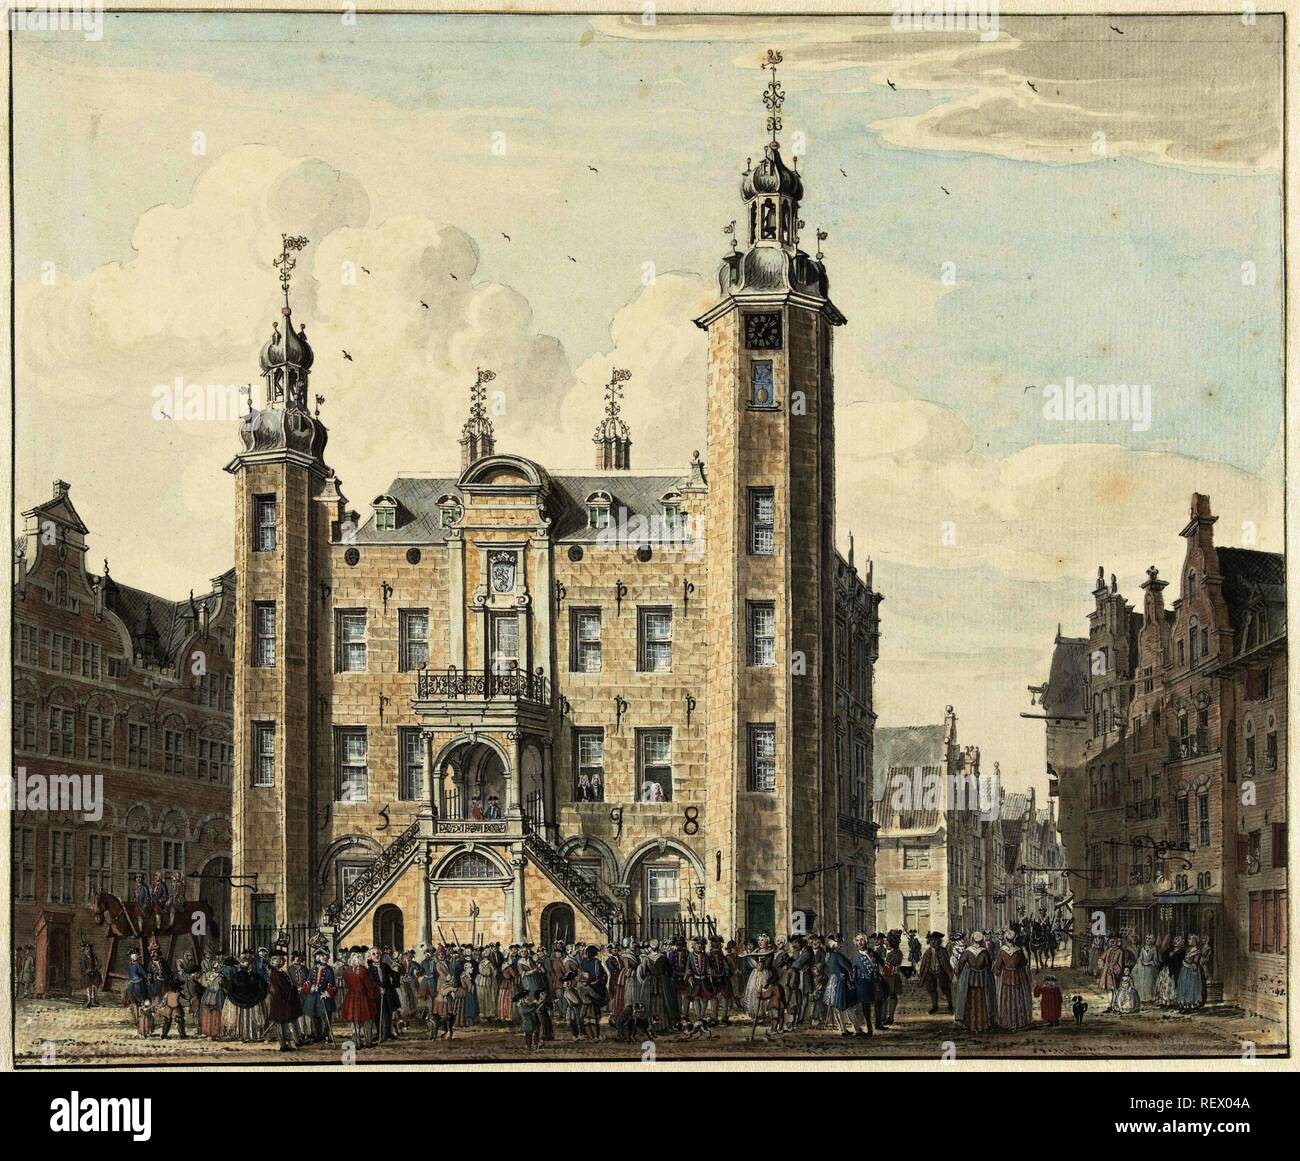 Das Rathaus der Stadt Venlo. Verfasser der Stellungnahme: Jan de Beijer. Dating: 1741. Maße: H 210 mm x B 254 mm. Museum: Rijksmuseum, Amsterdam. Stockfoto